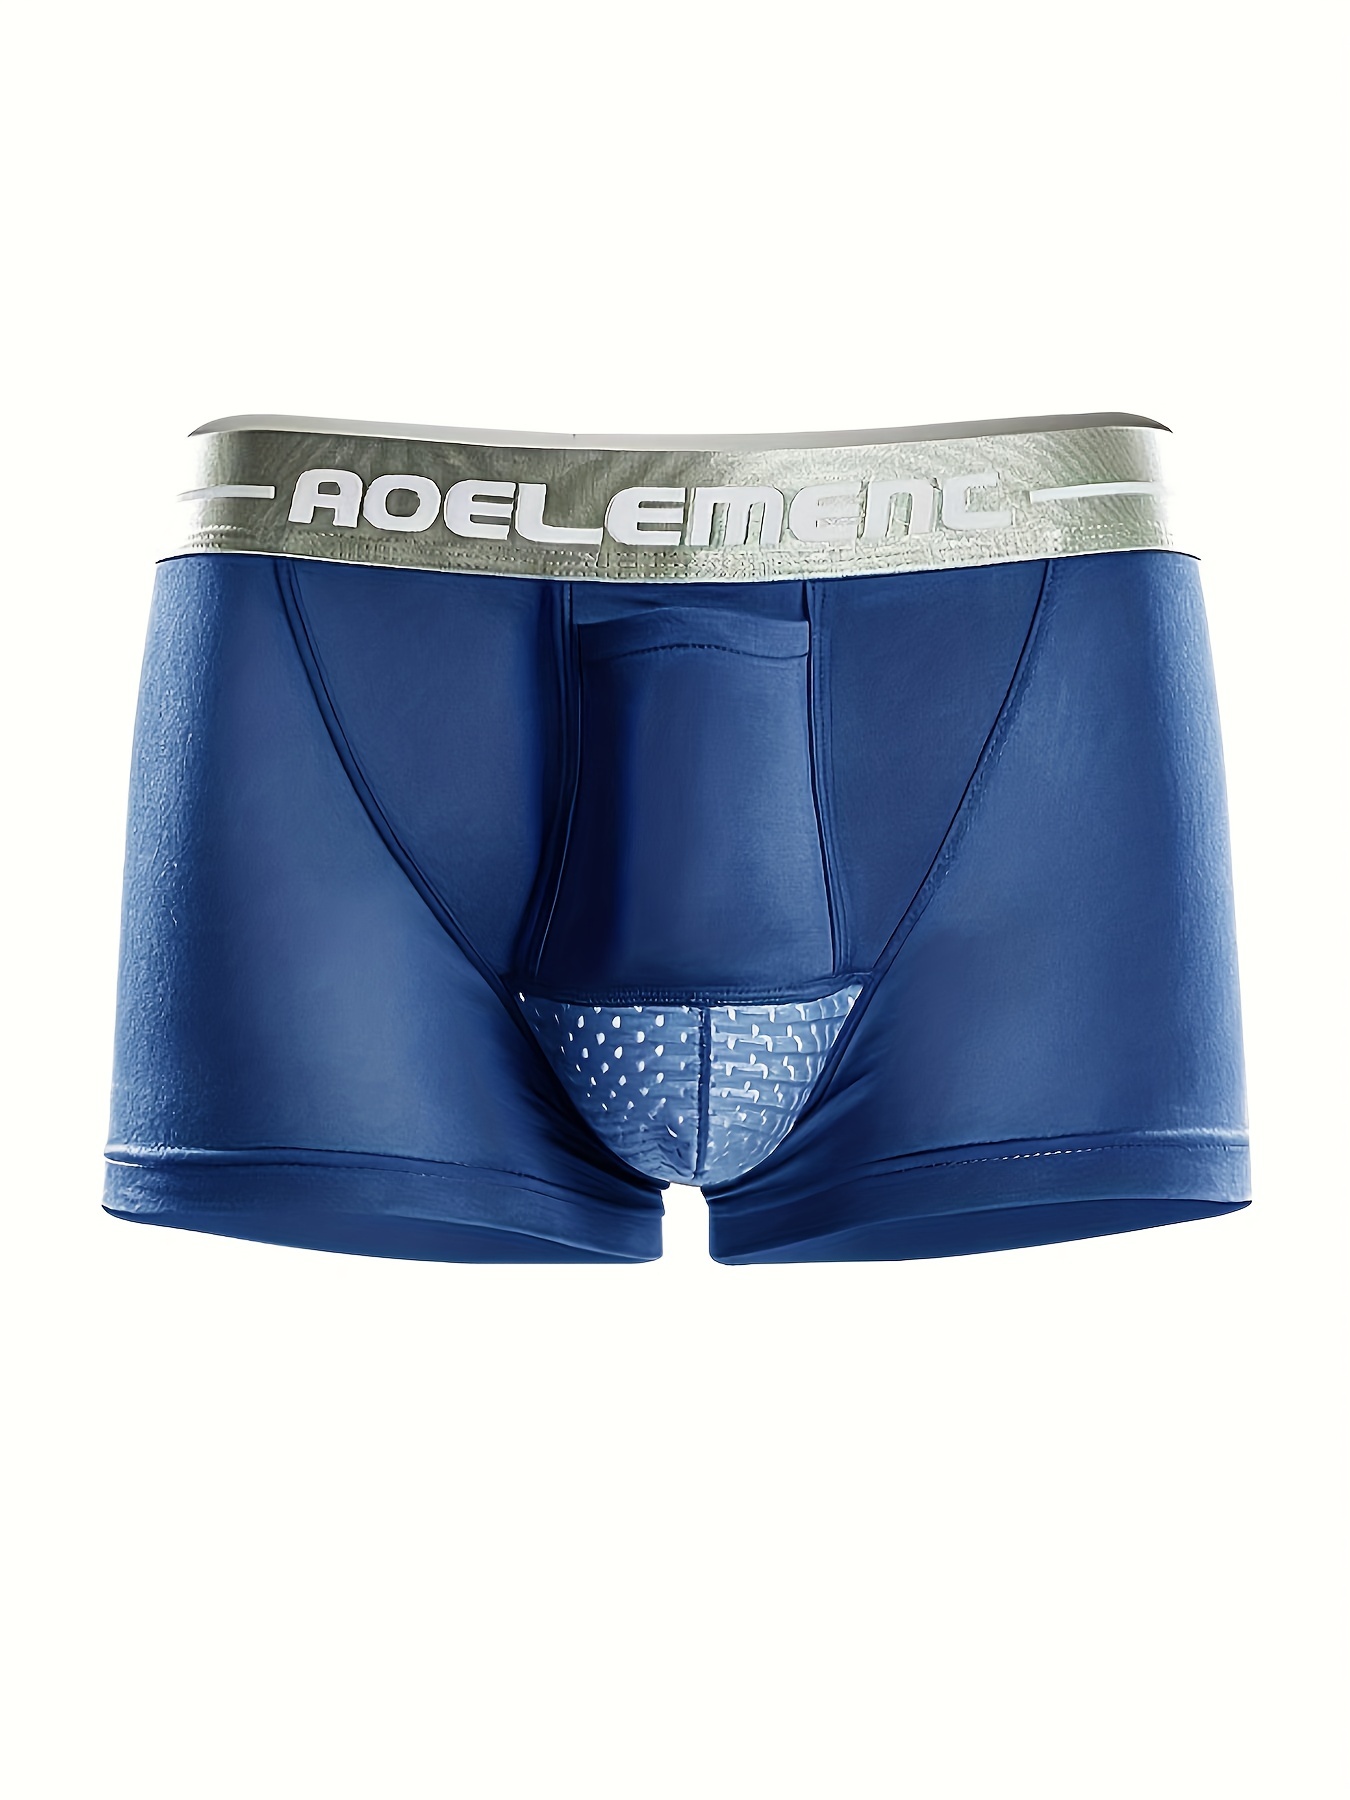  AOELEMENT Men's Underwear Modal Breathable Trunks